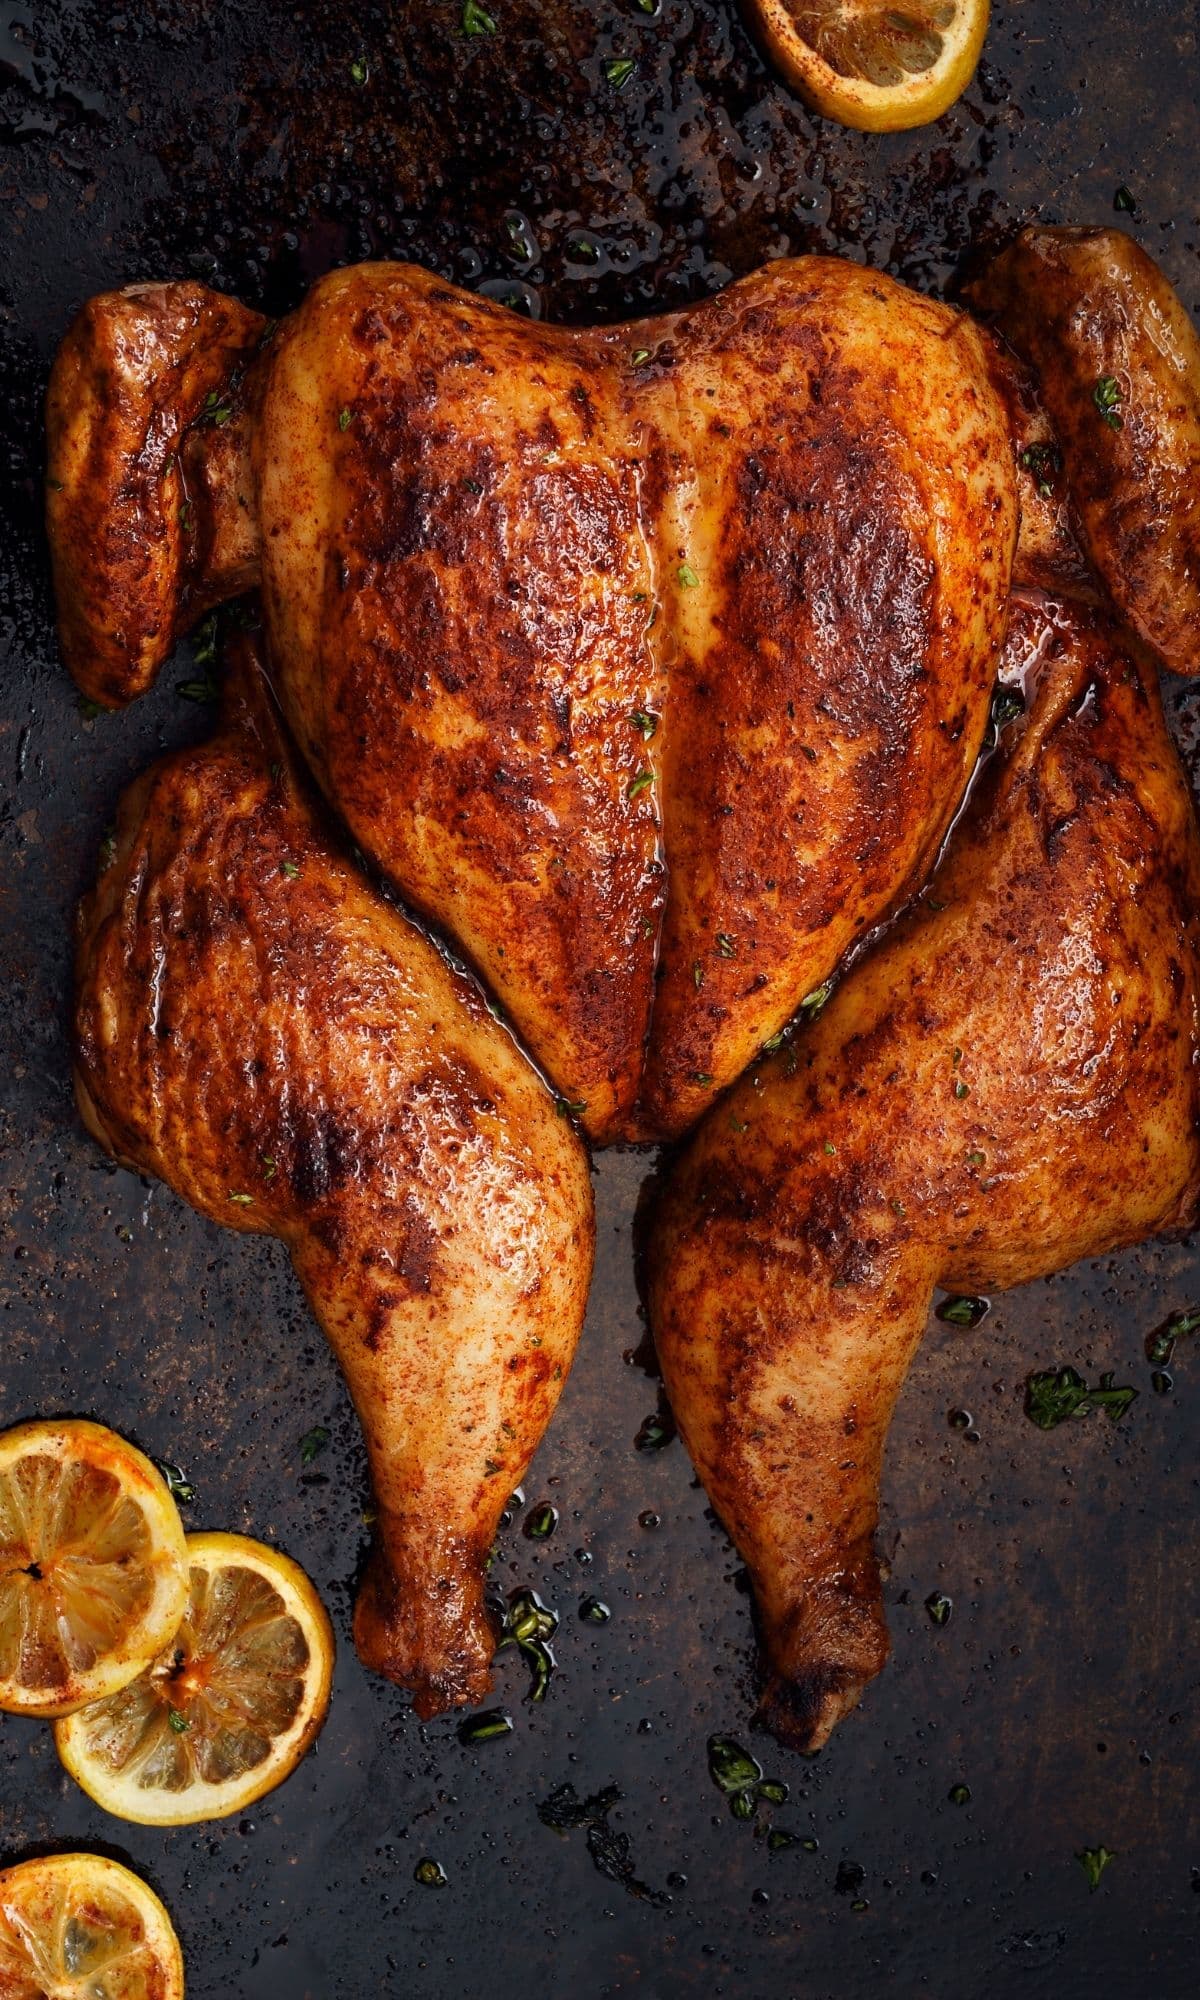 is rotisserie chicken healthy?